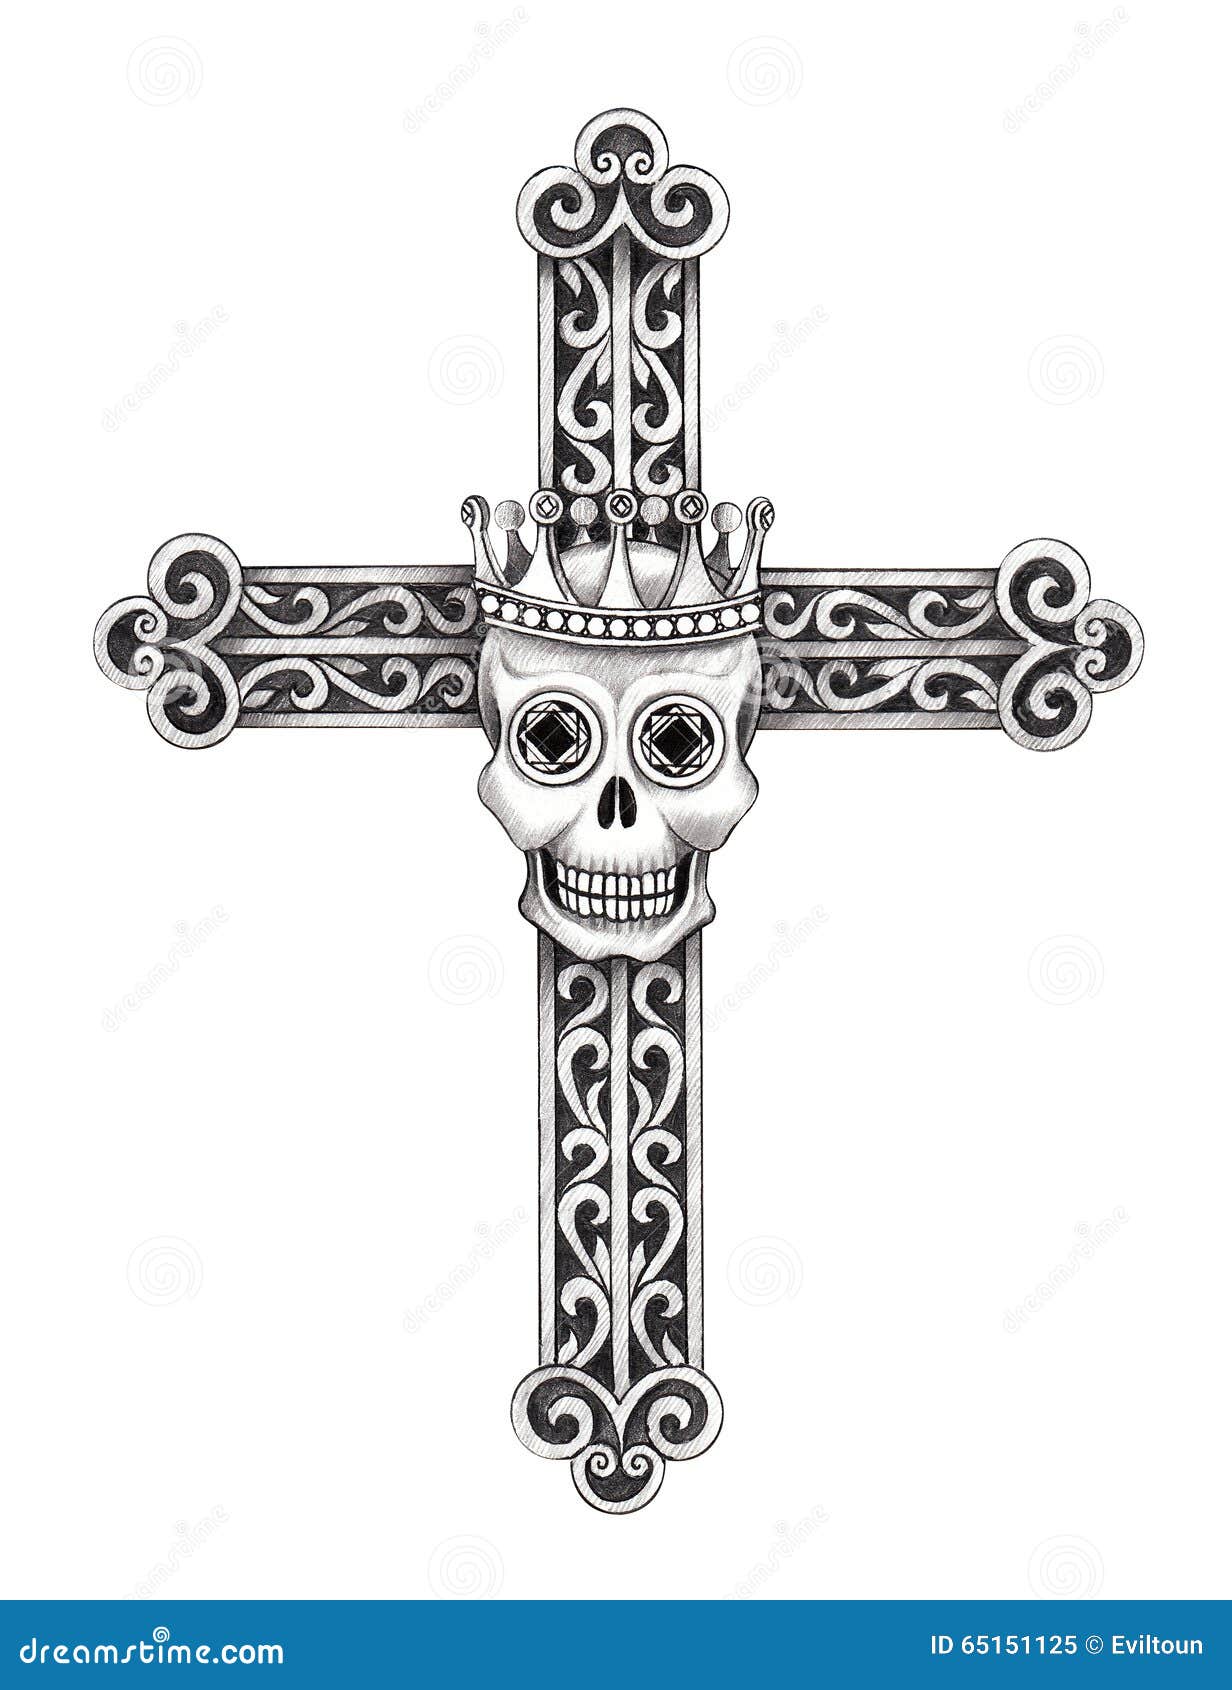 Art skull cross tattoo. stock illustration. Illustration of black - 65151125